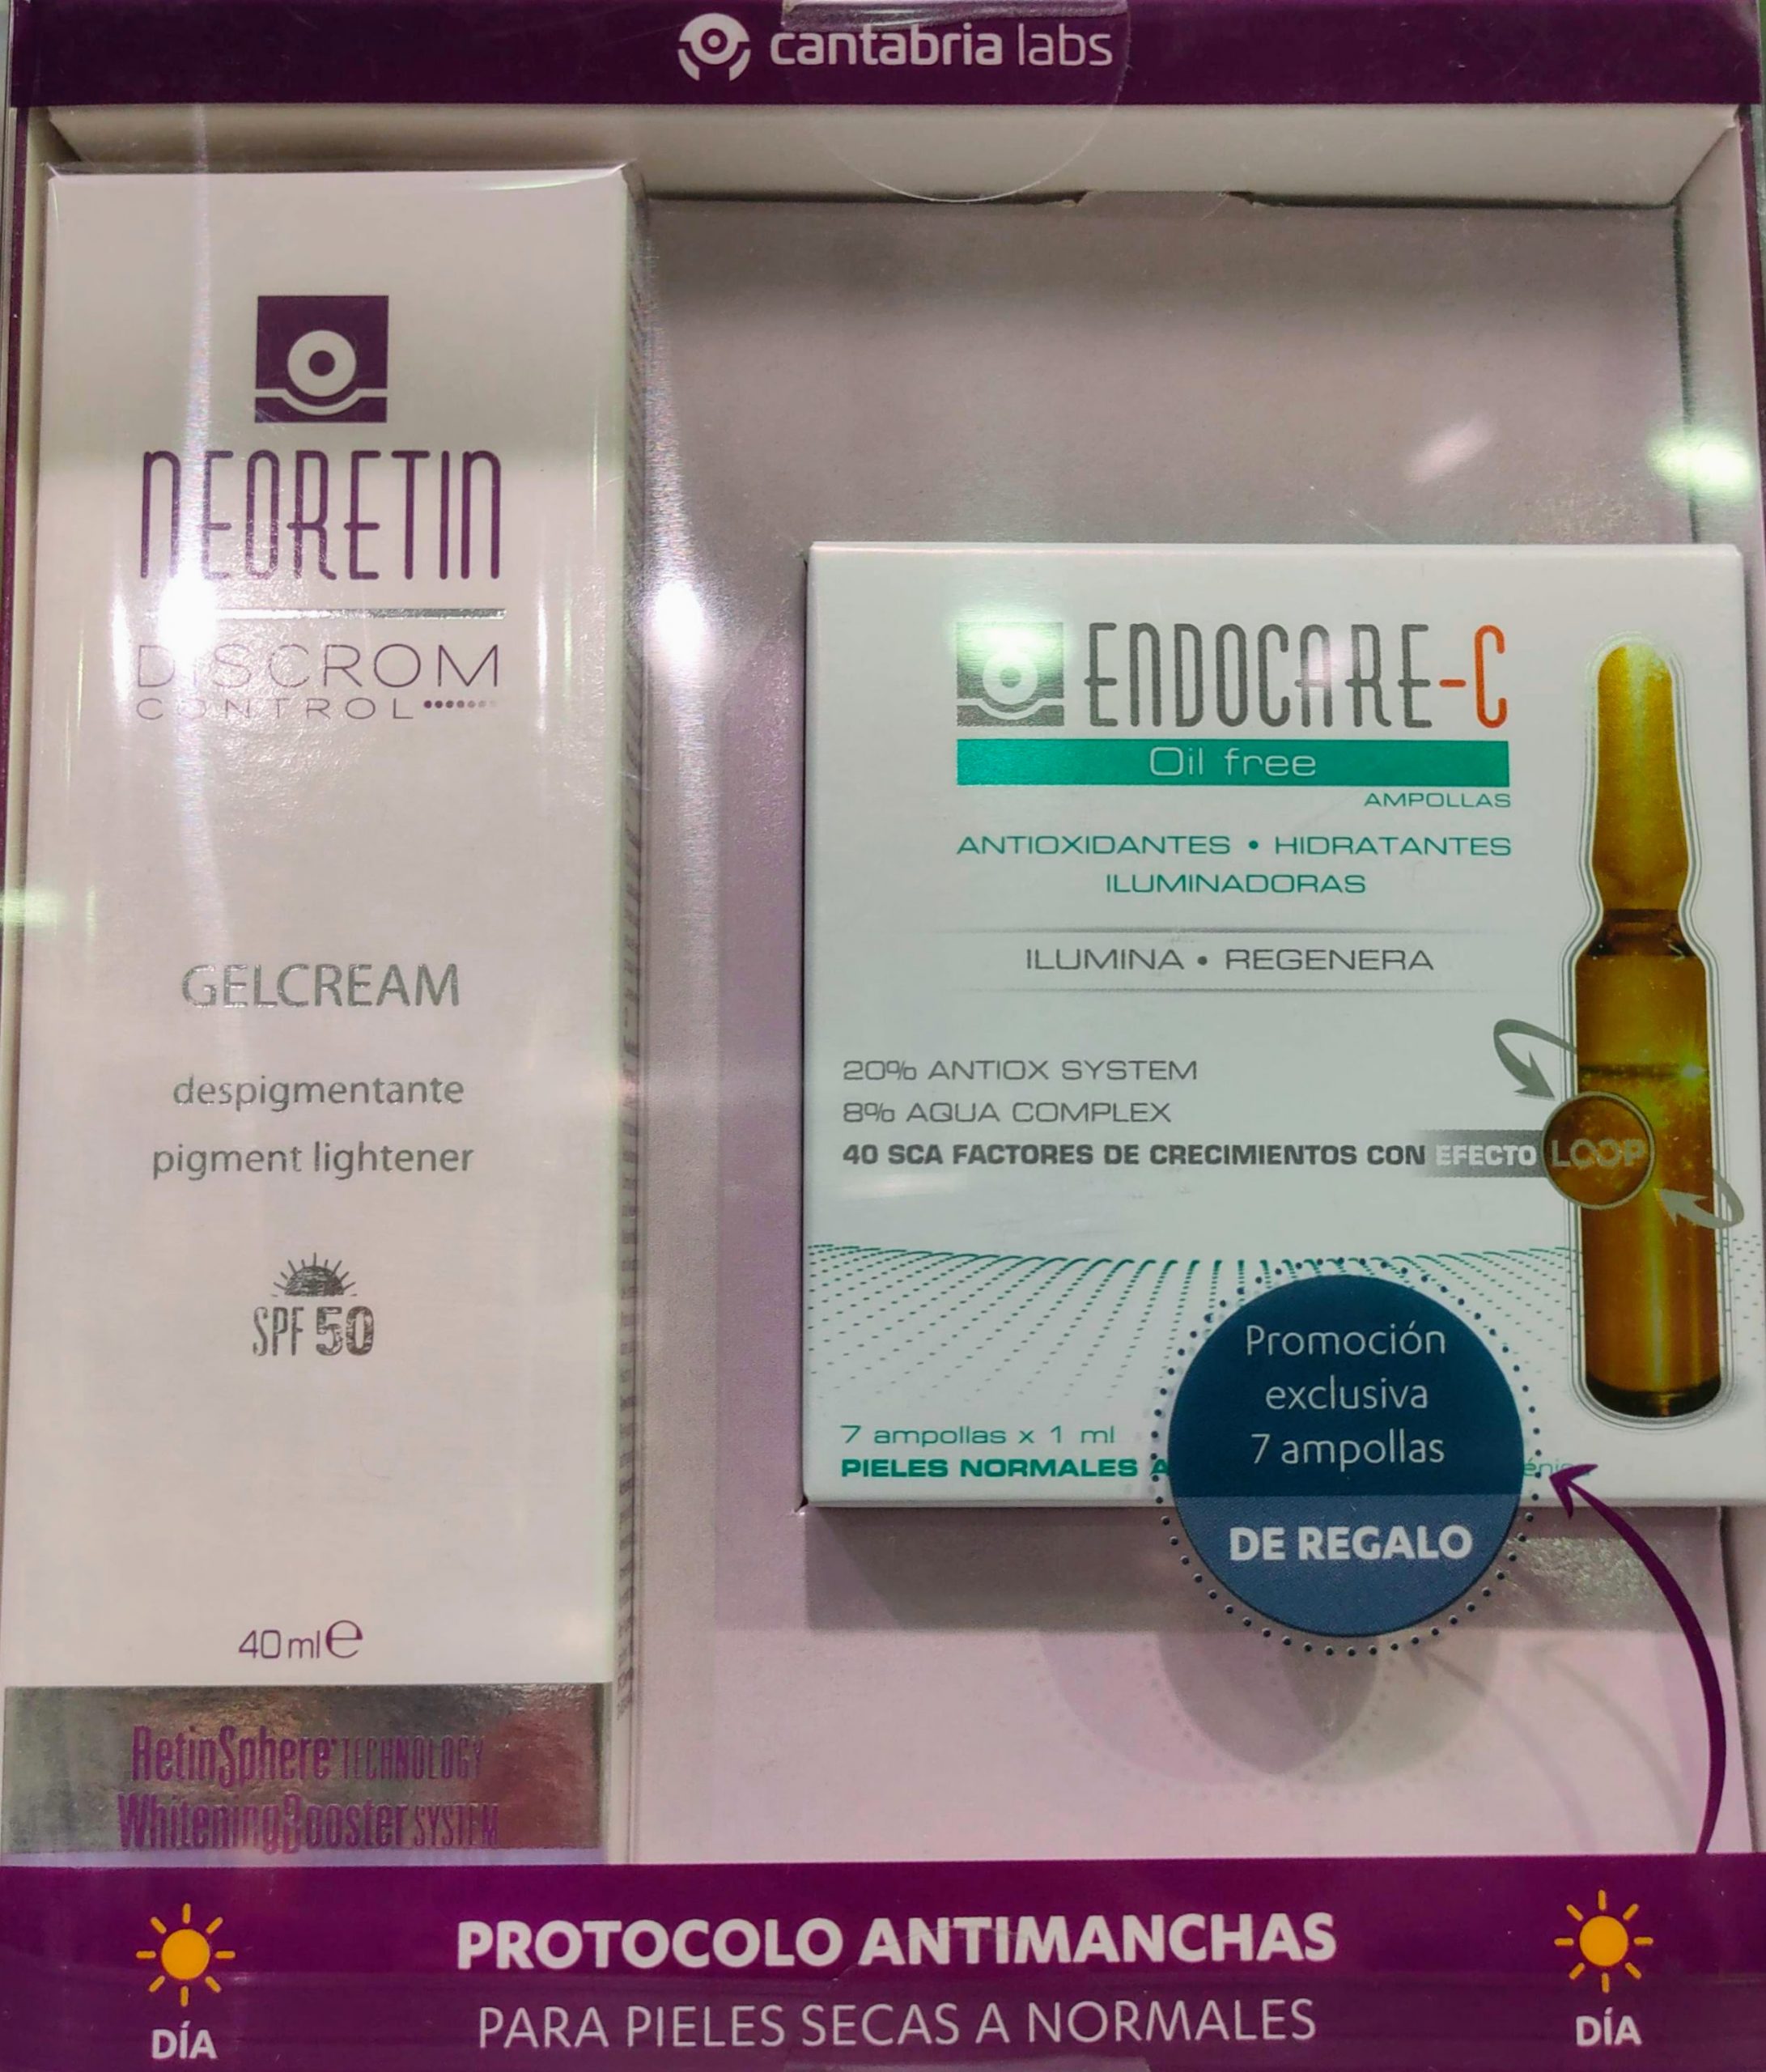 Comprar Neoretin Discrom Control Gel Cream SPF50 40 Ml en Gran Farmacia Andorra Online productos Endocare al Mejor Precio